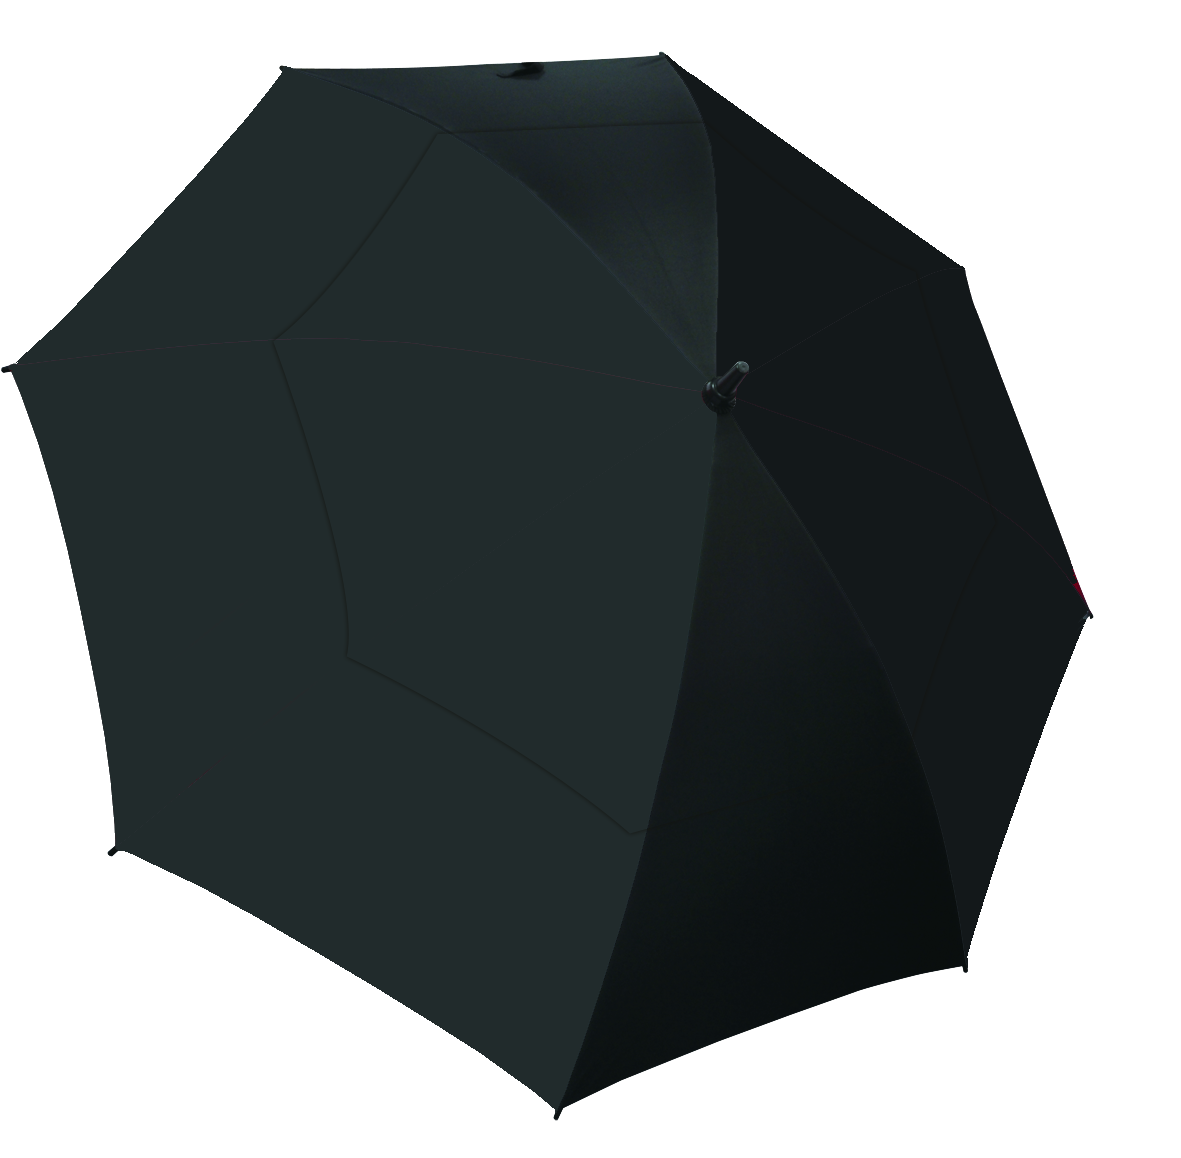 Manual Open Supervent Umbrella